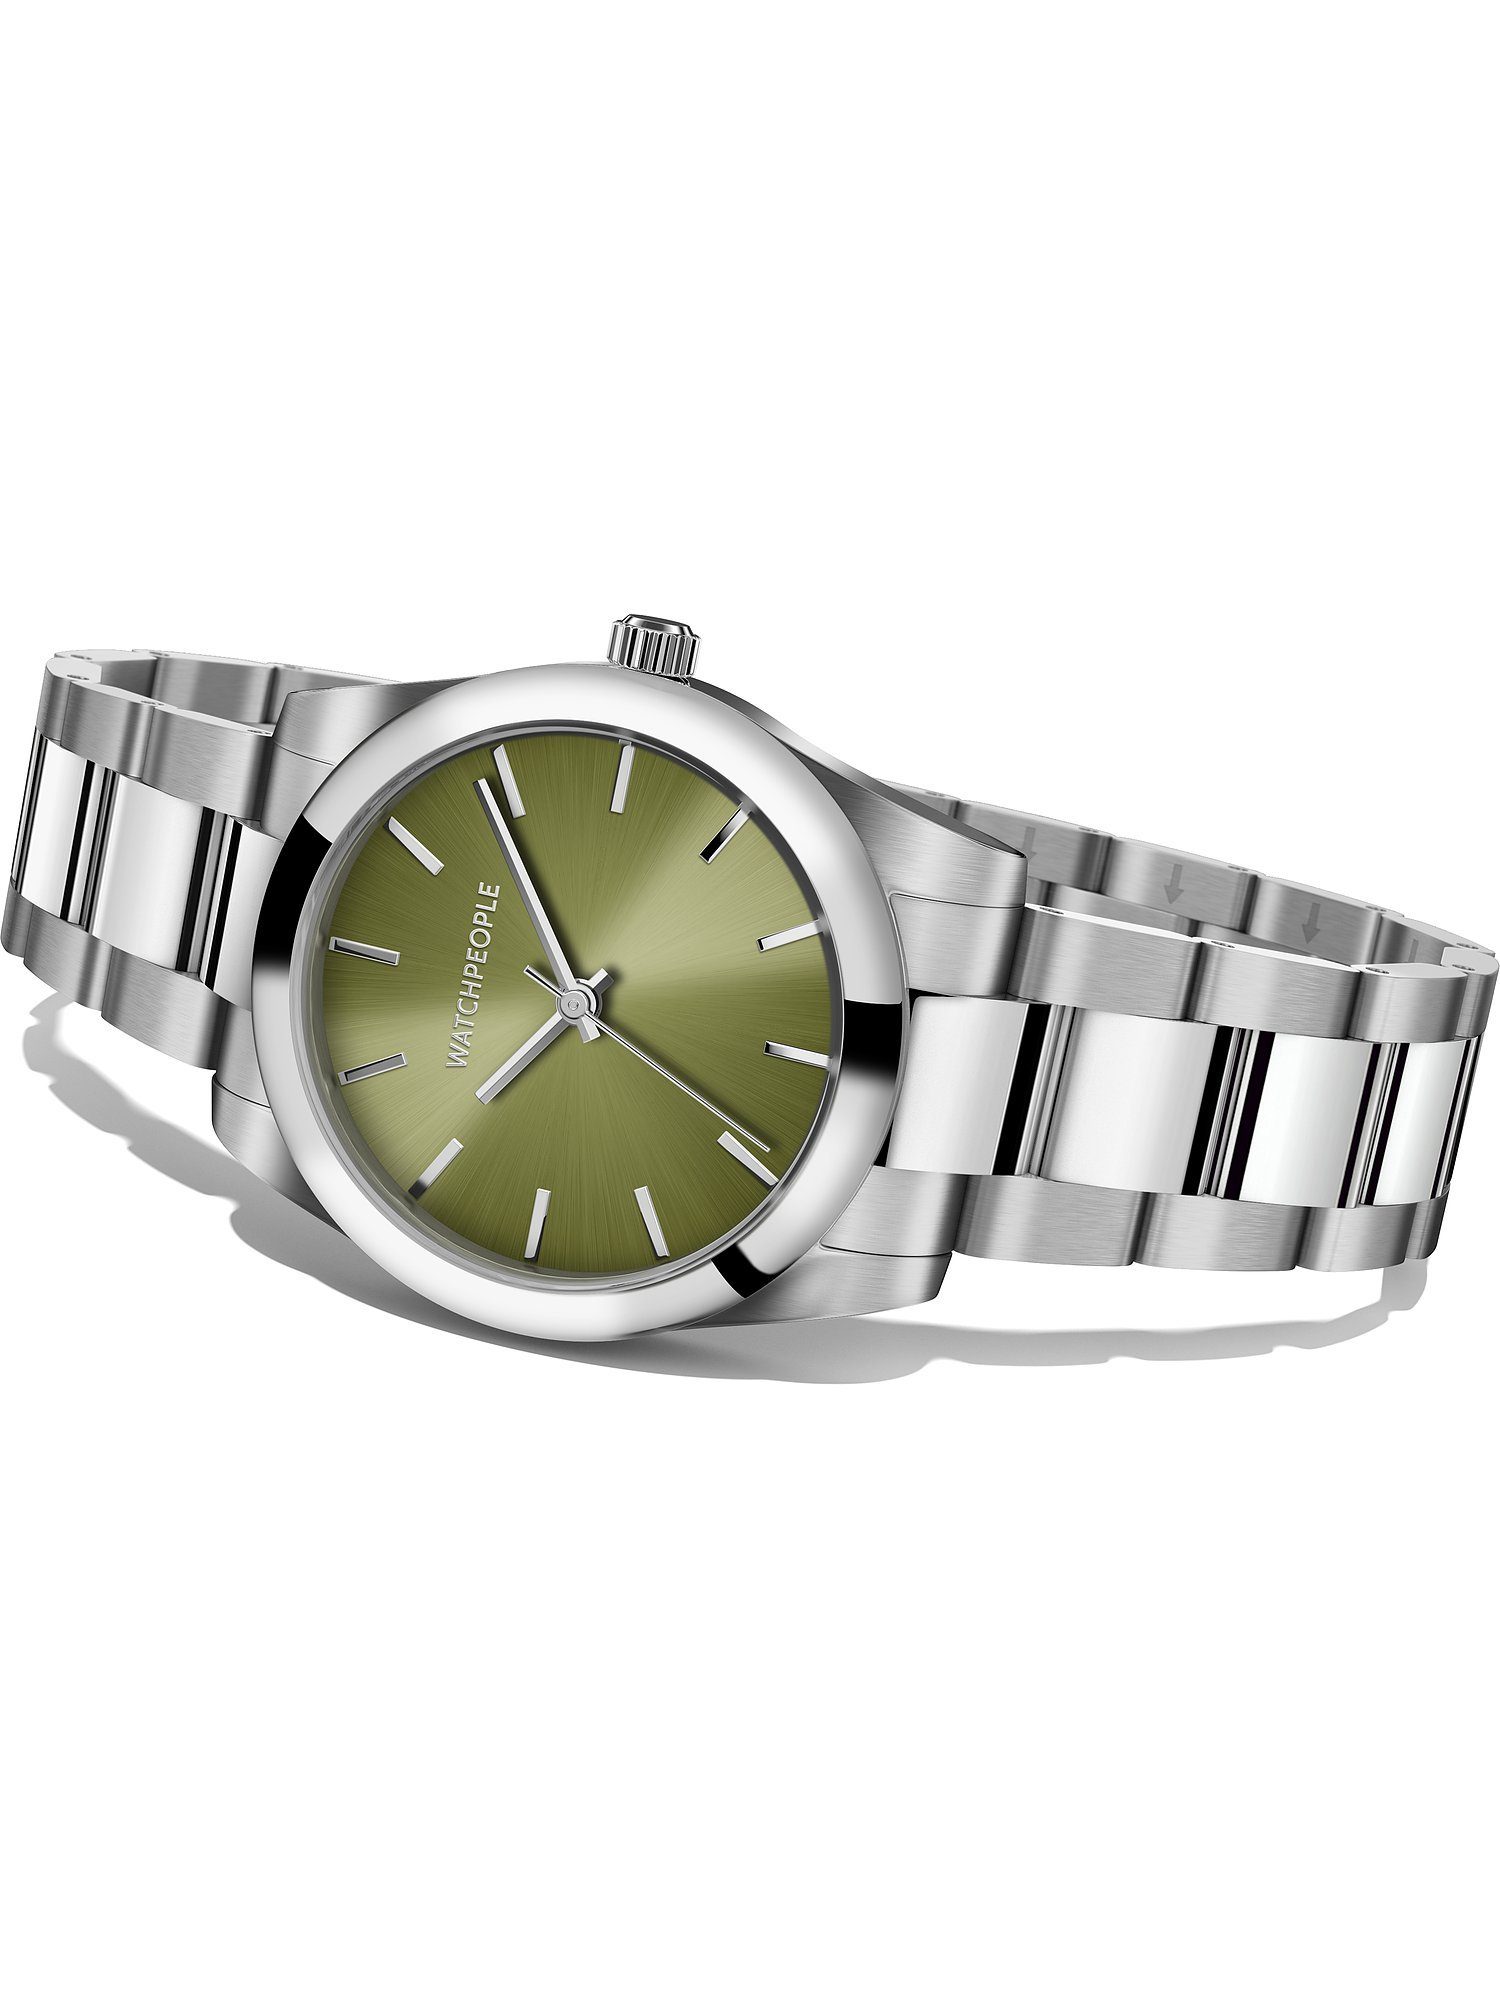 Damen-Uhren Quarzuhr grün Quarz, Klassikuhr Watchpeople Watchpeople Analog